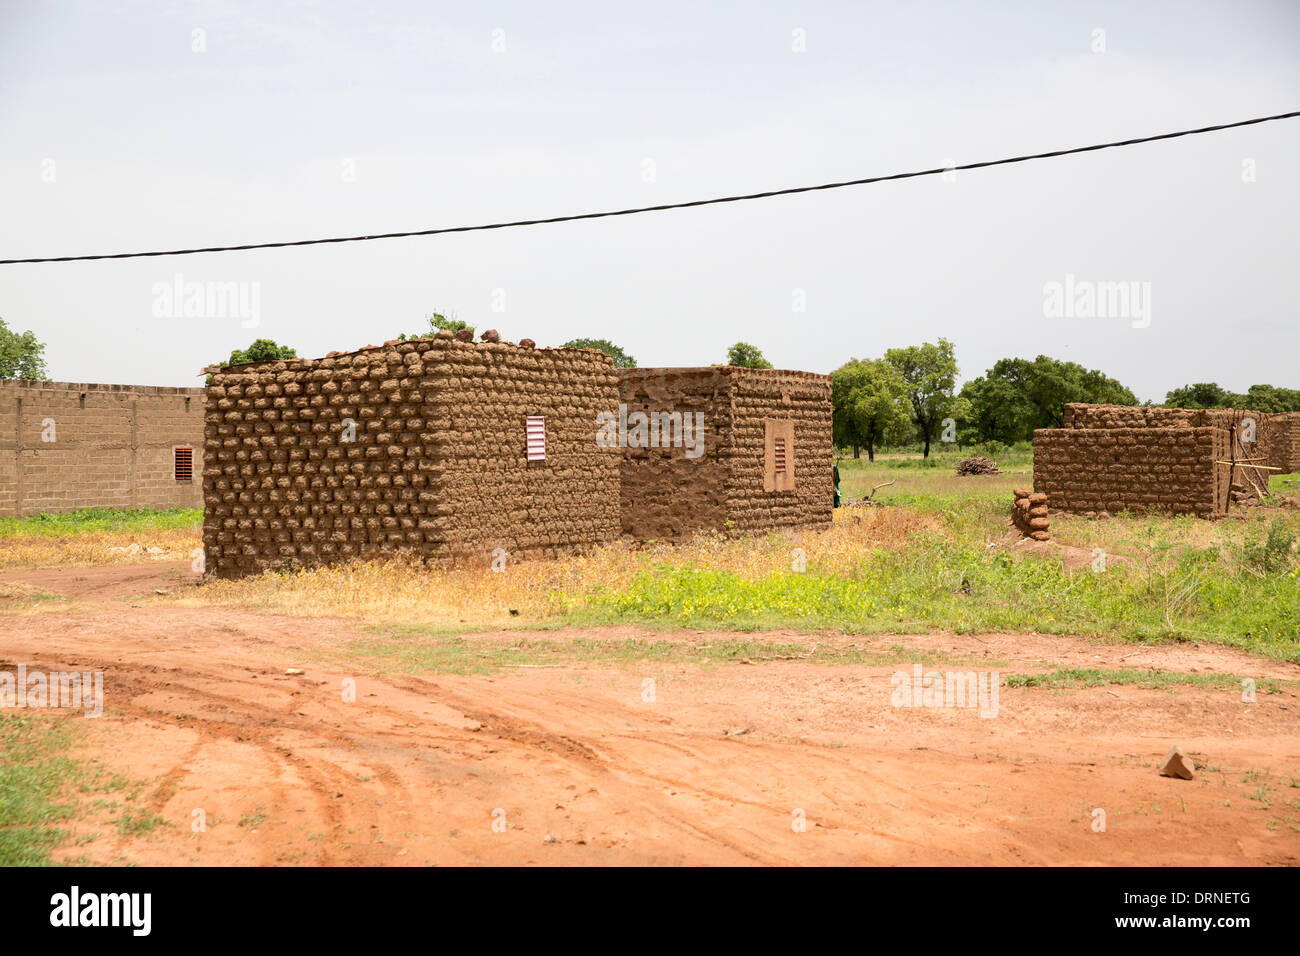 mud brick huts in Burkina Faso, Africa Stock Photo